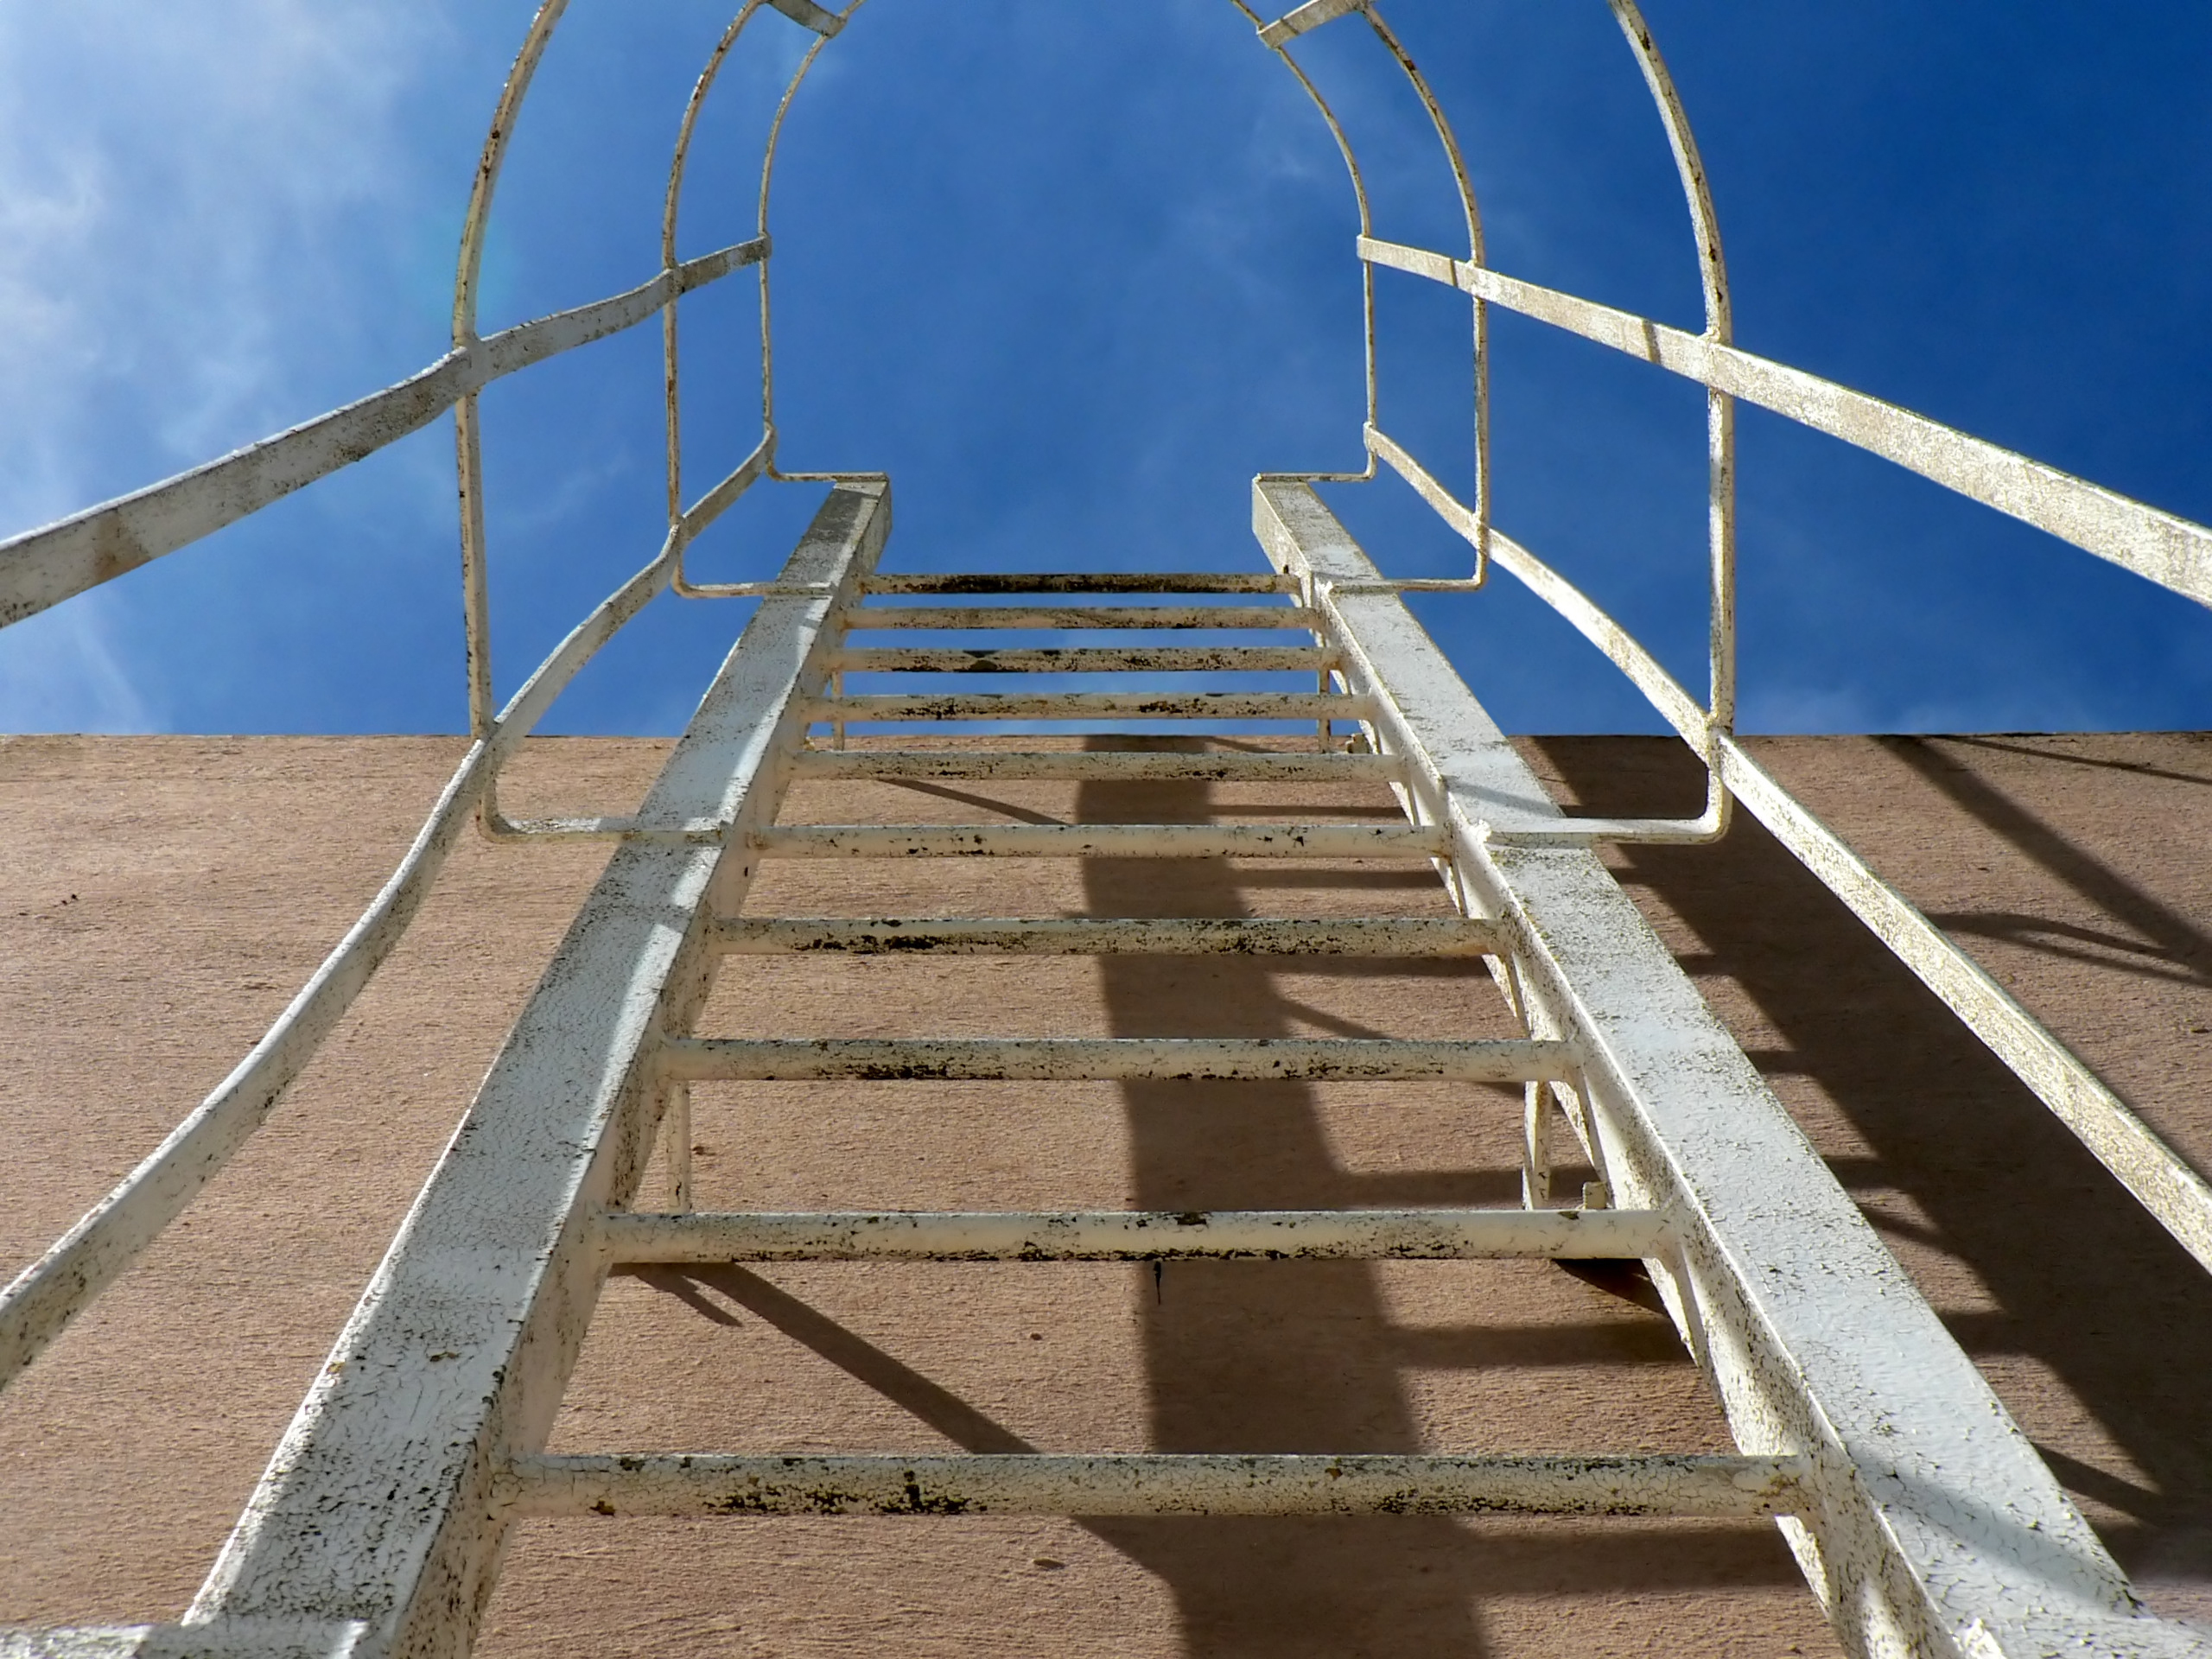 MSHA shares ladder safety guidance